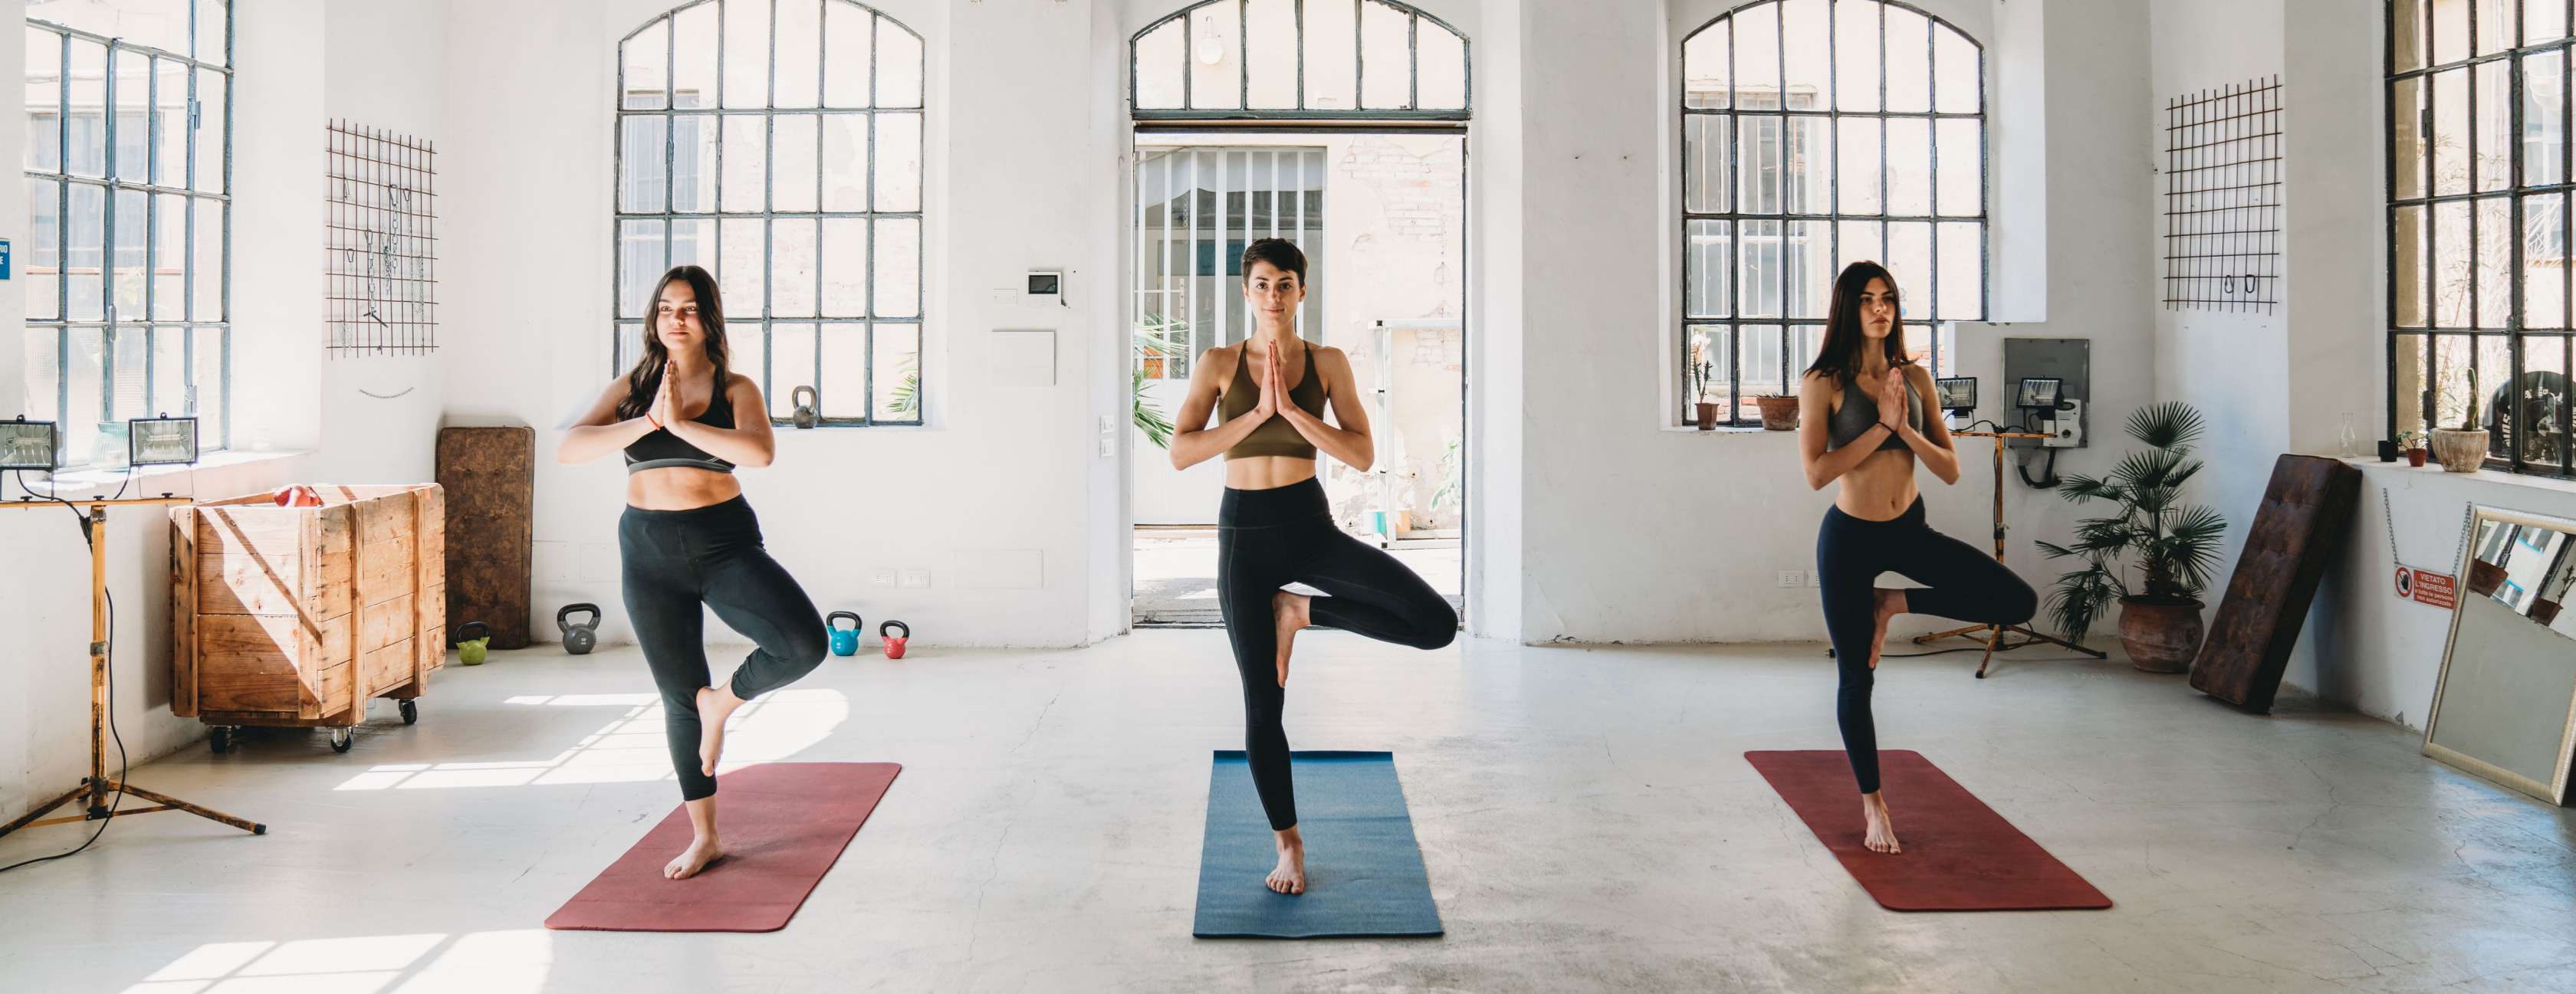 Drei Frauen machen Yoga-Übungen in einem Studio.